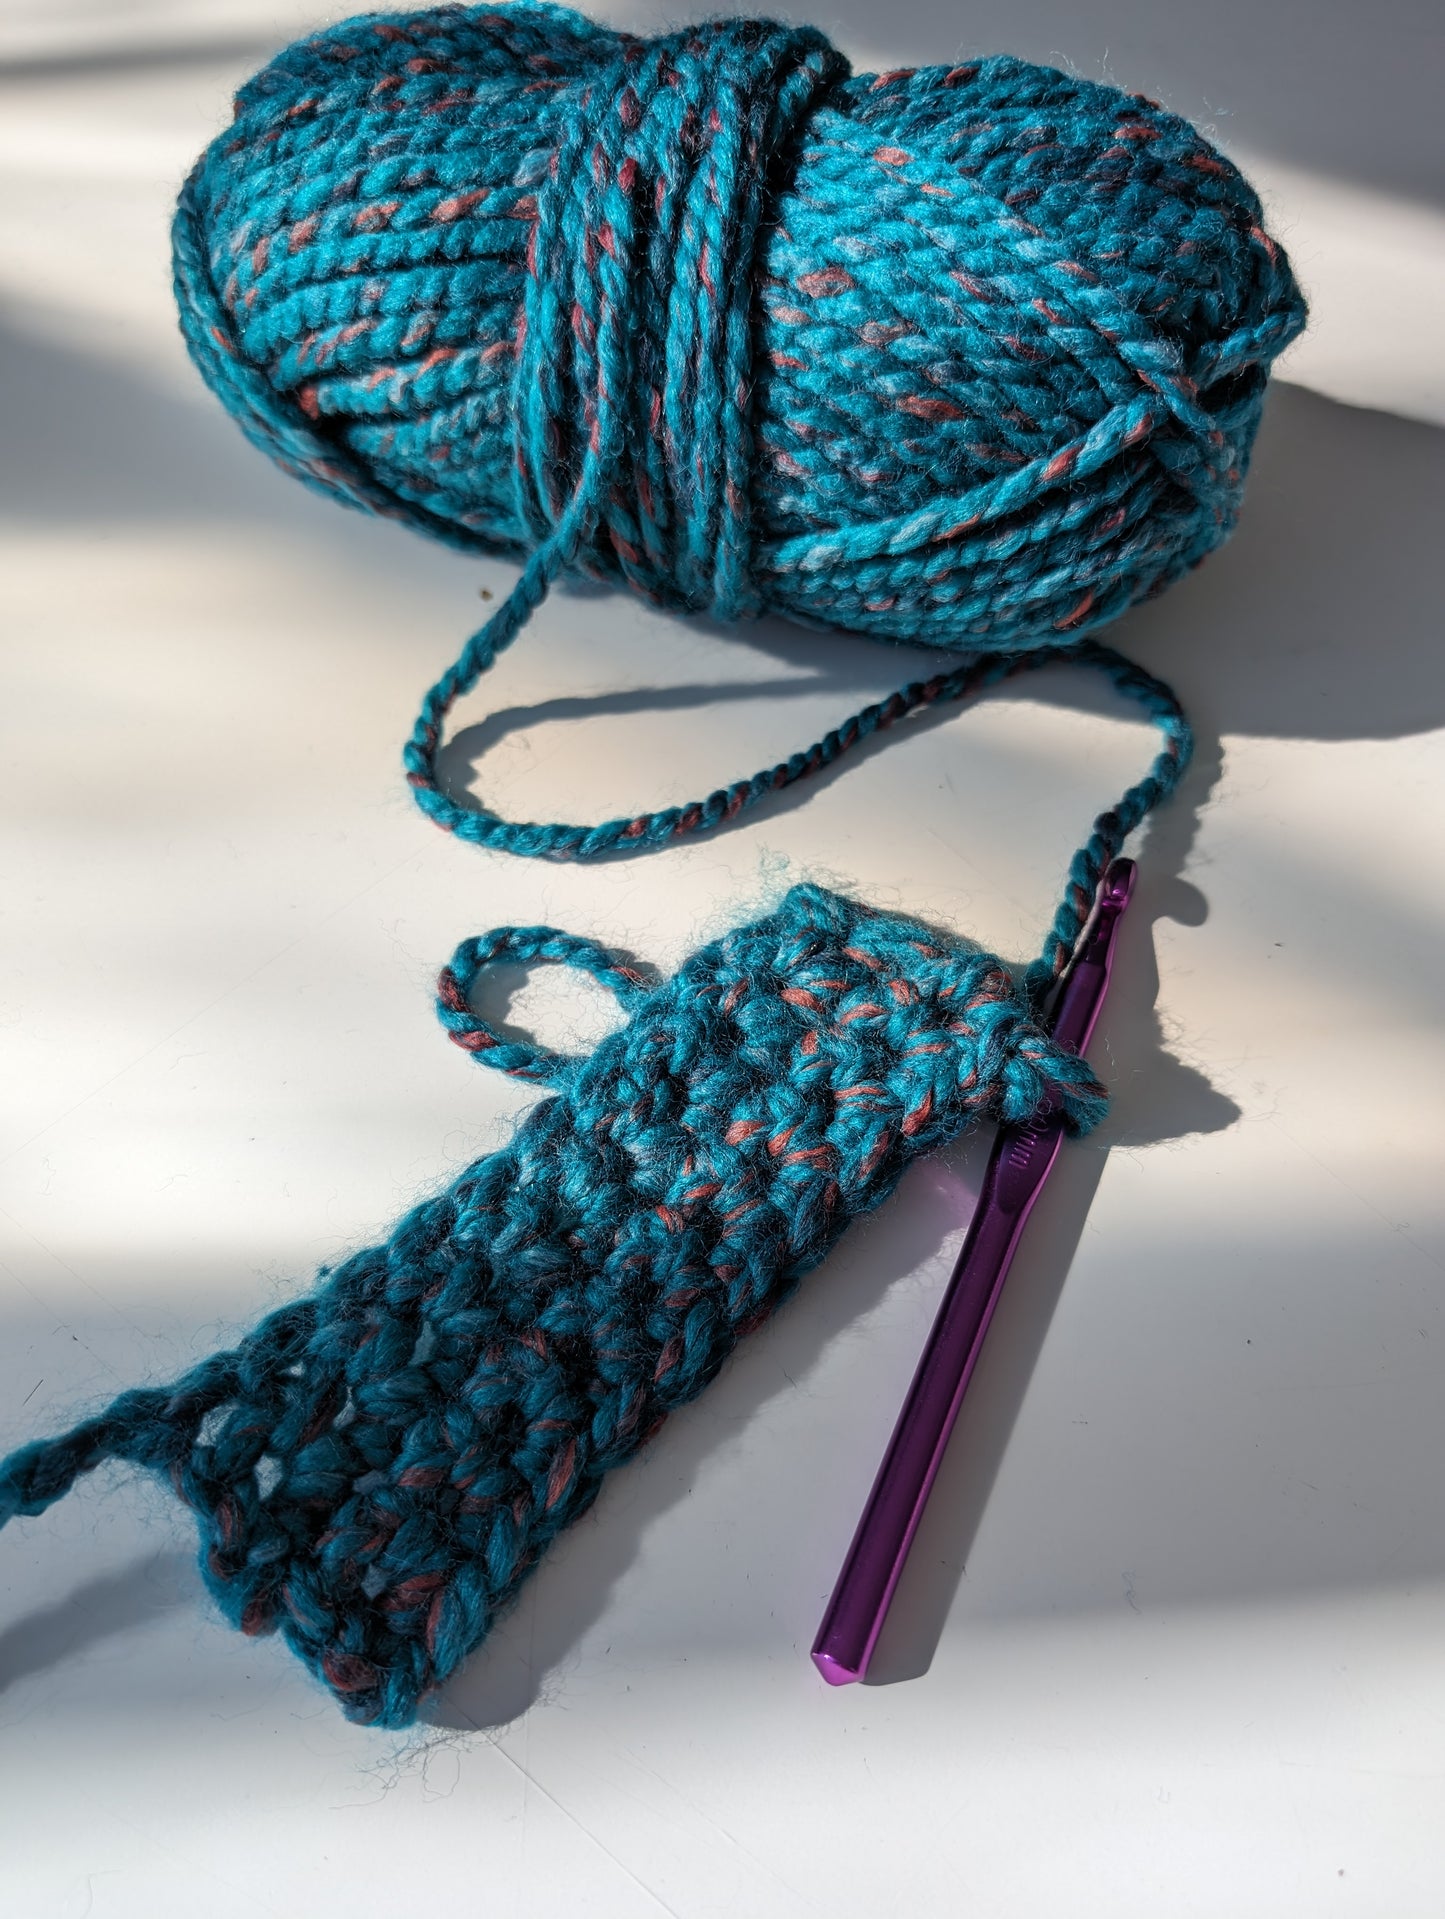 Crochet 101 - Single Crochet Scarf Workshop